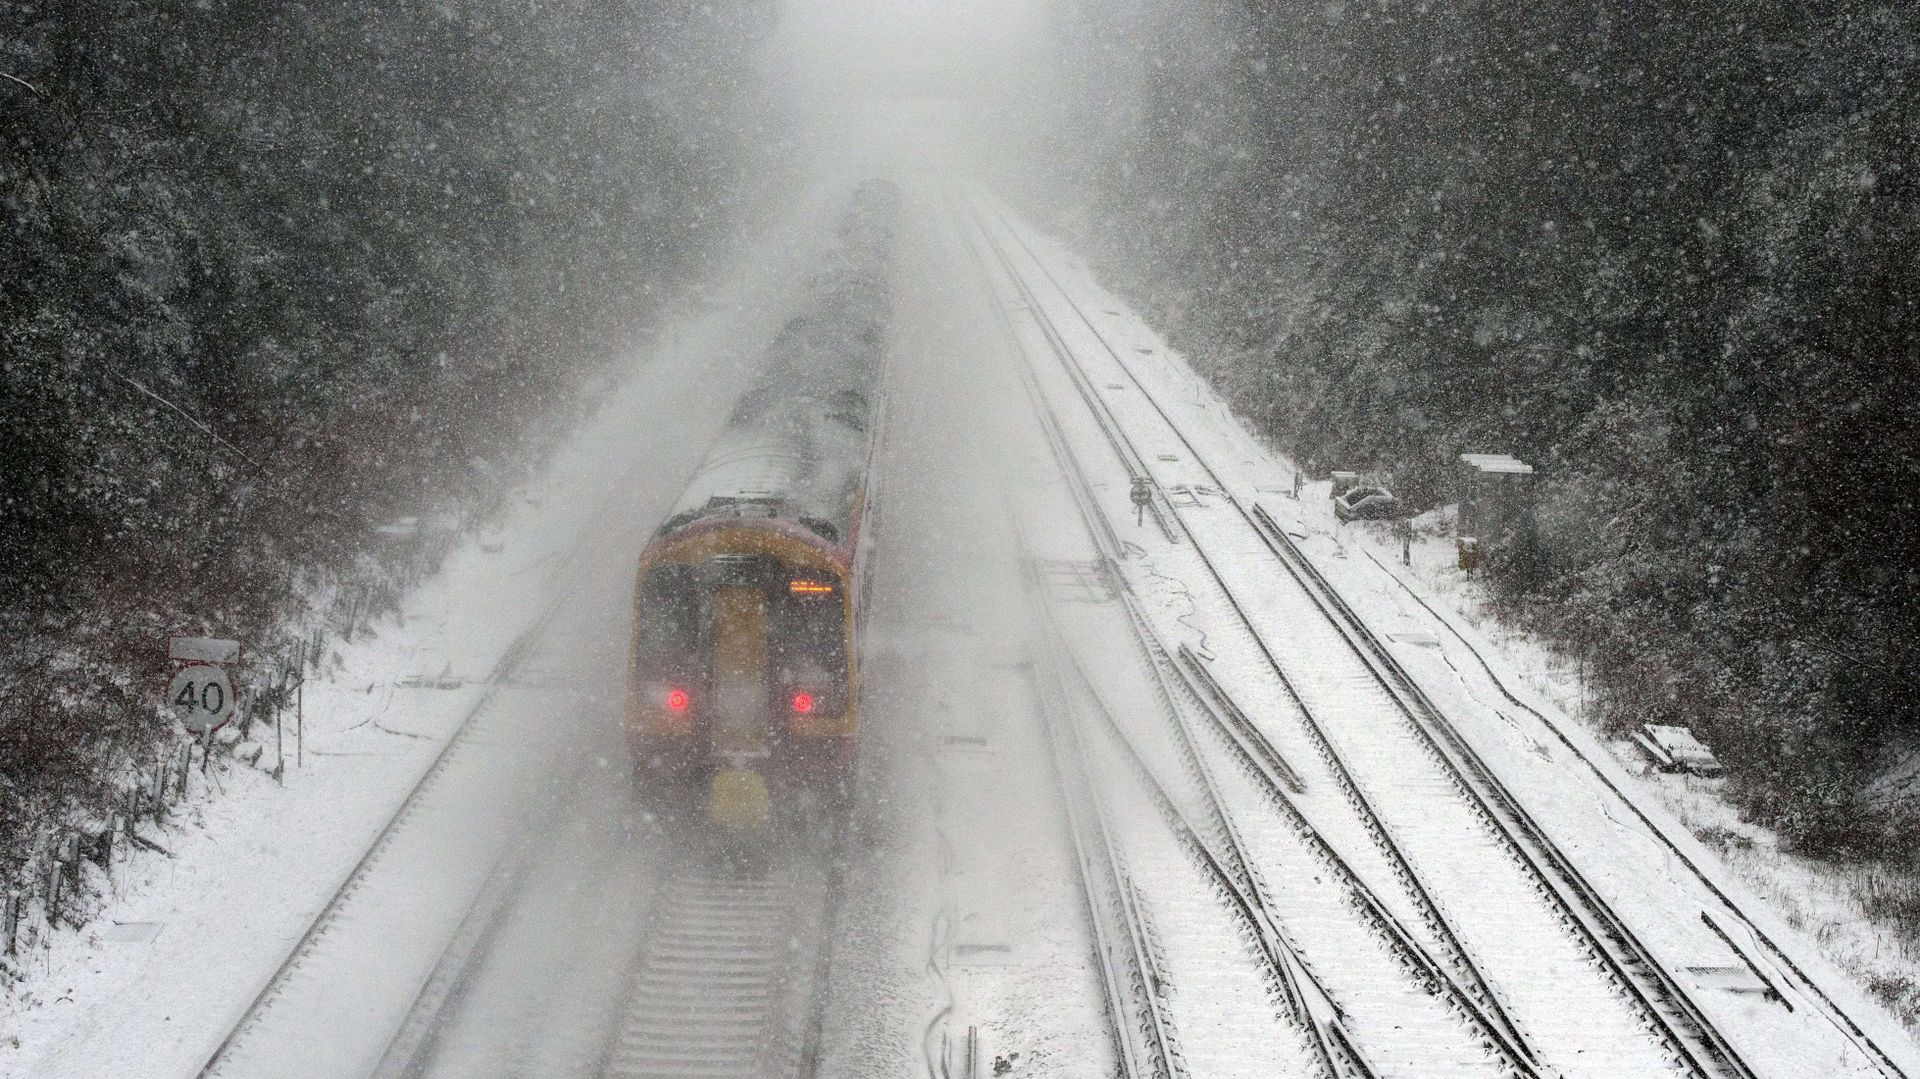 Fortes perturbations dans les transports à cause de la neige en GB